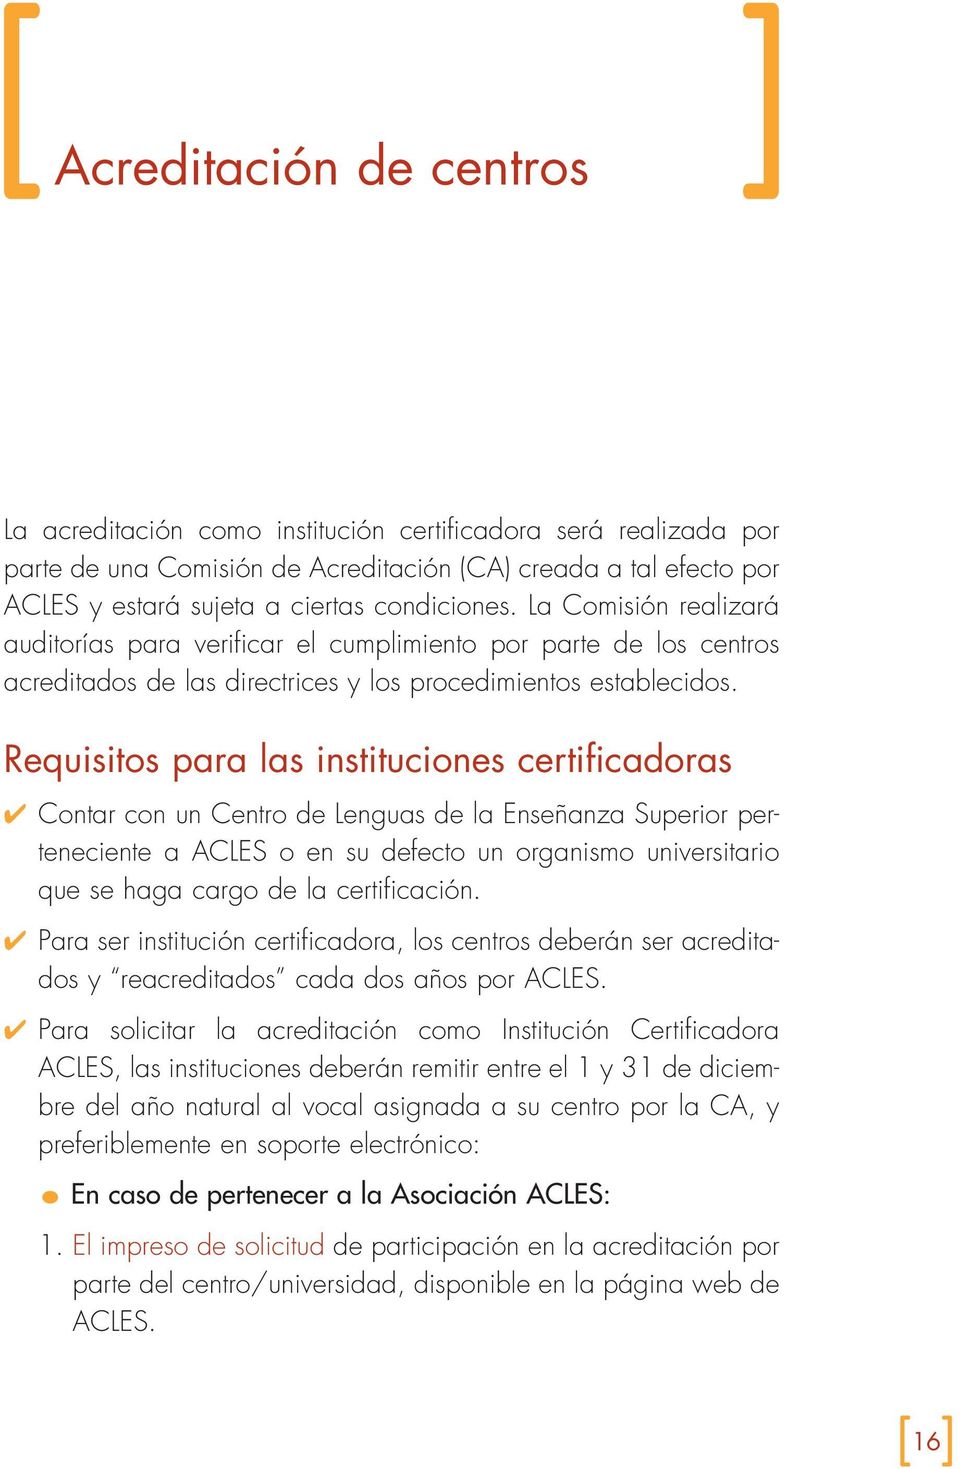 Requisitos para las instituciones certificadoras Contar con un Centro de Lenguas de la Enseñanza Superior perteneciente a ACLES o en su defecto un organismo universitario que se haga cargo de la